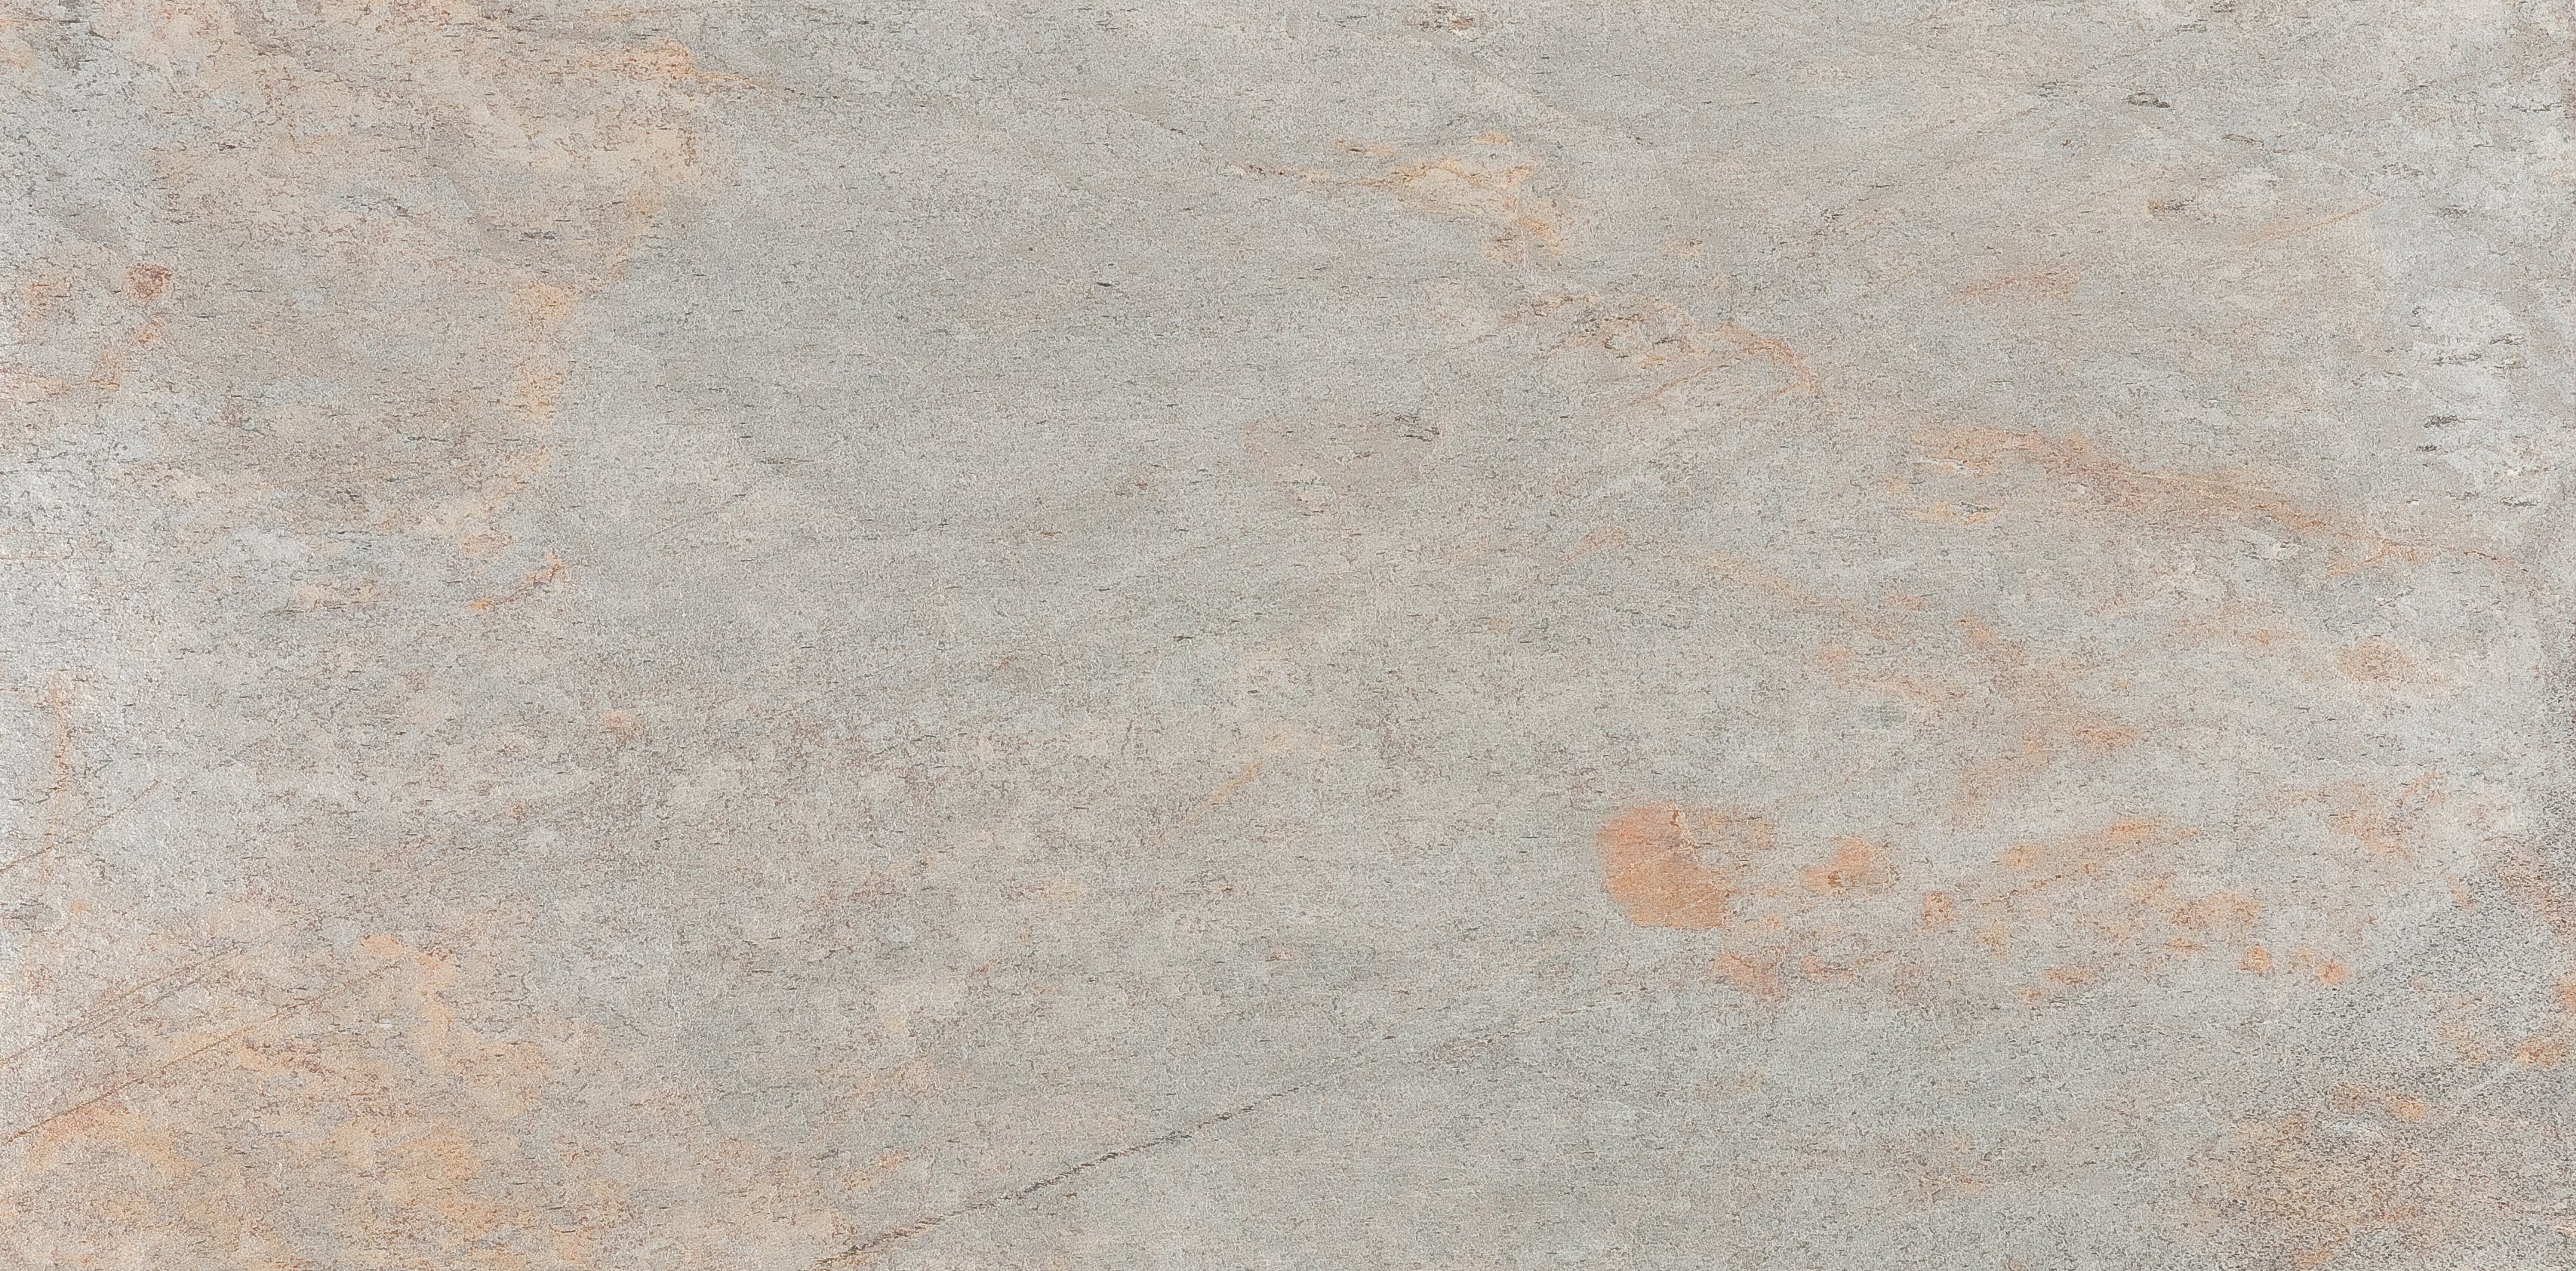 Slate Lite Dekorpaneele Argento Auro, BxL: 61x122 cm, 0,74 qm, (1-tlg) aus Echtstein